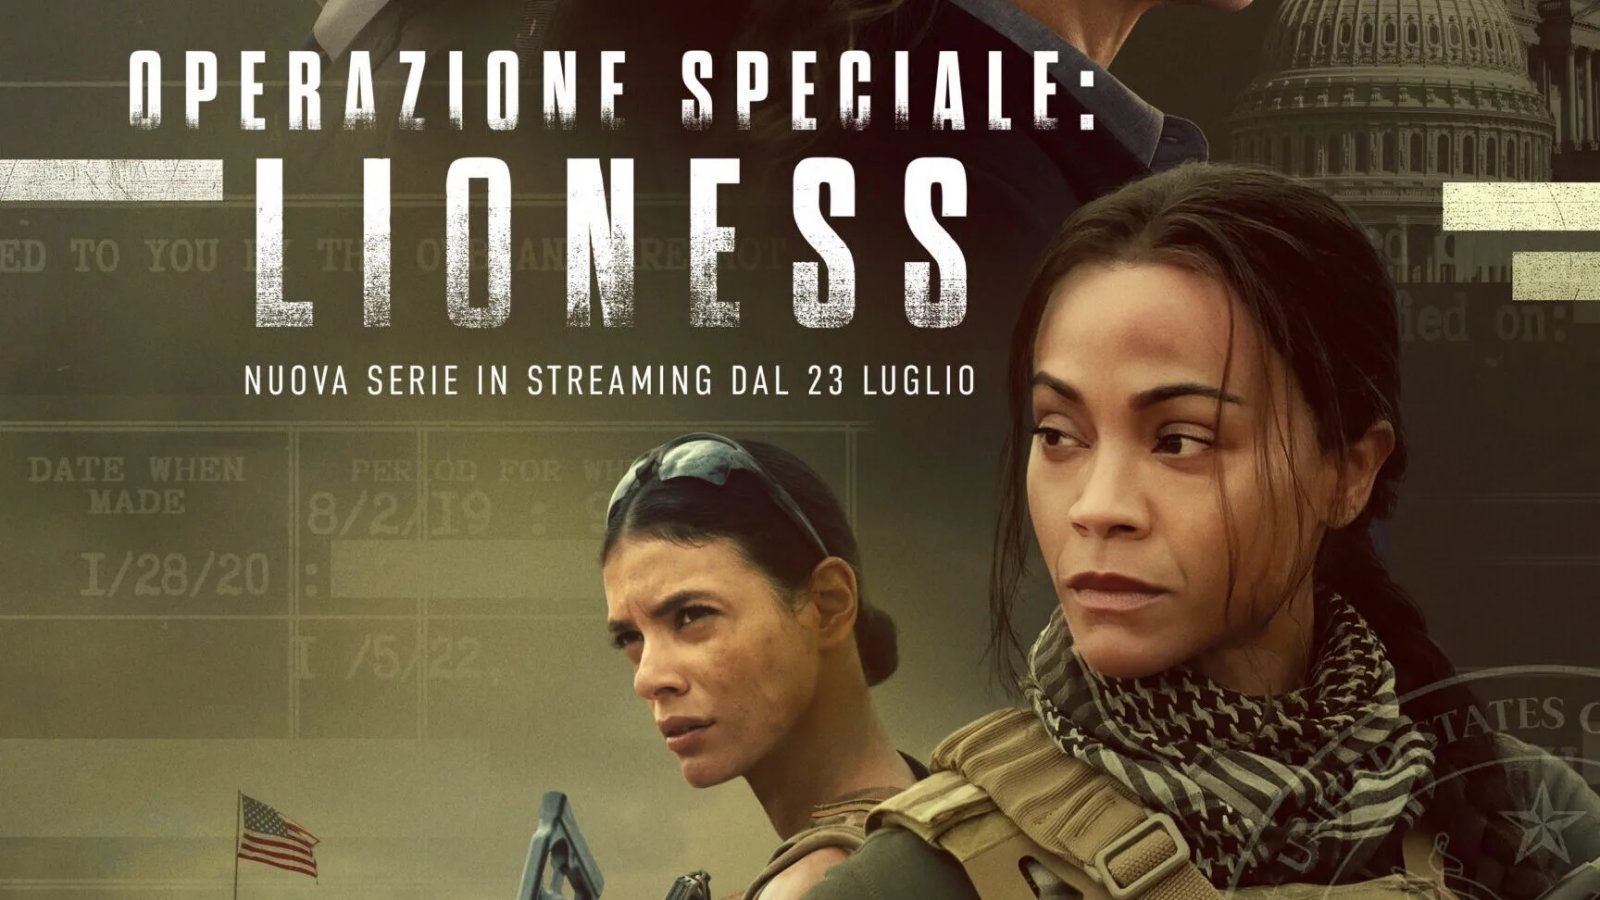 Operazione Speciale: Lioness, la recensione: un thriller spionistico al femminile